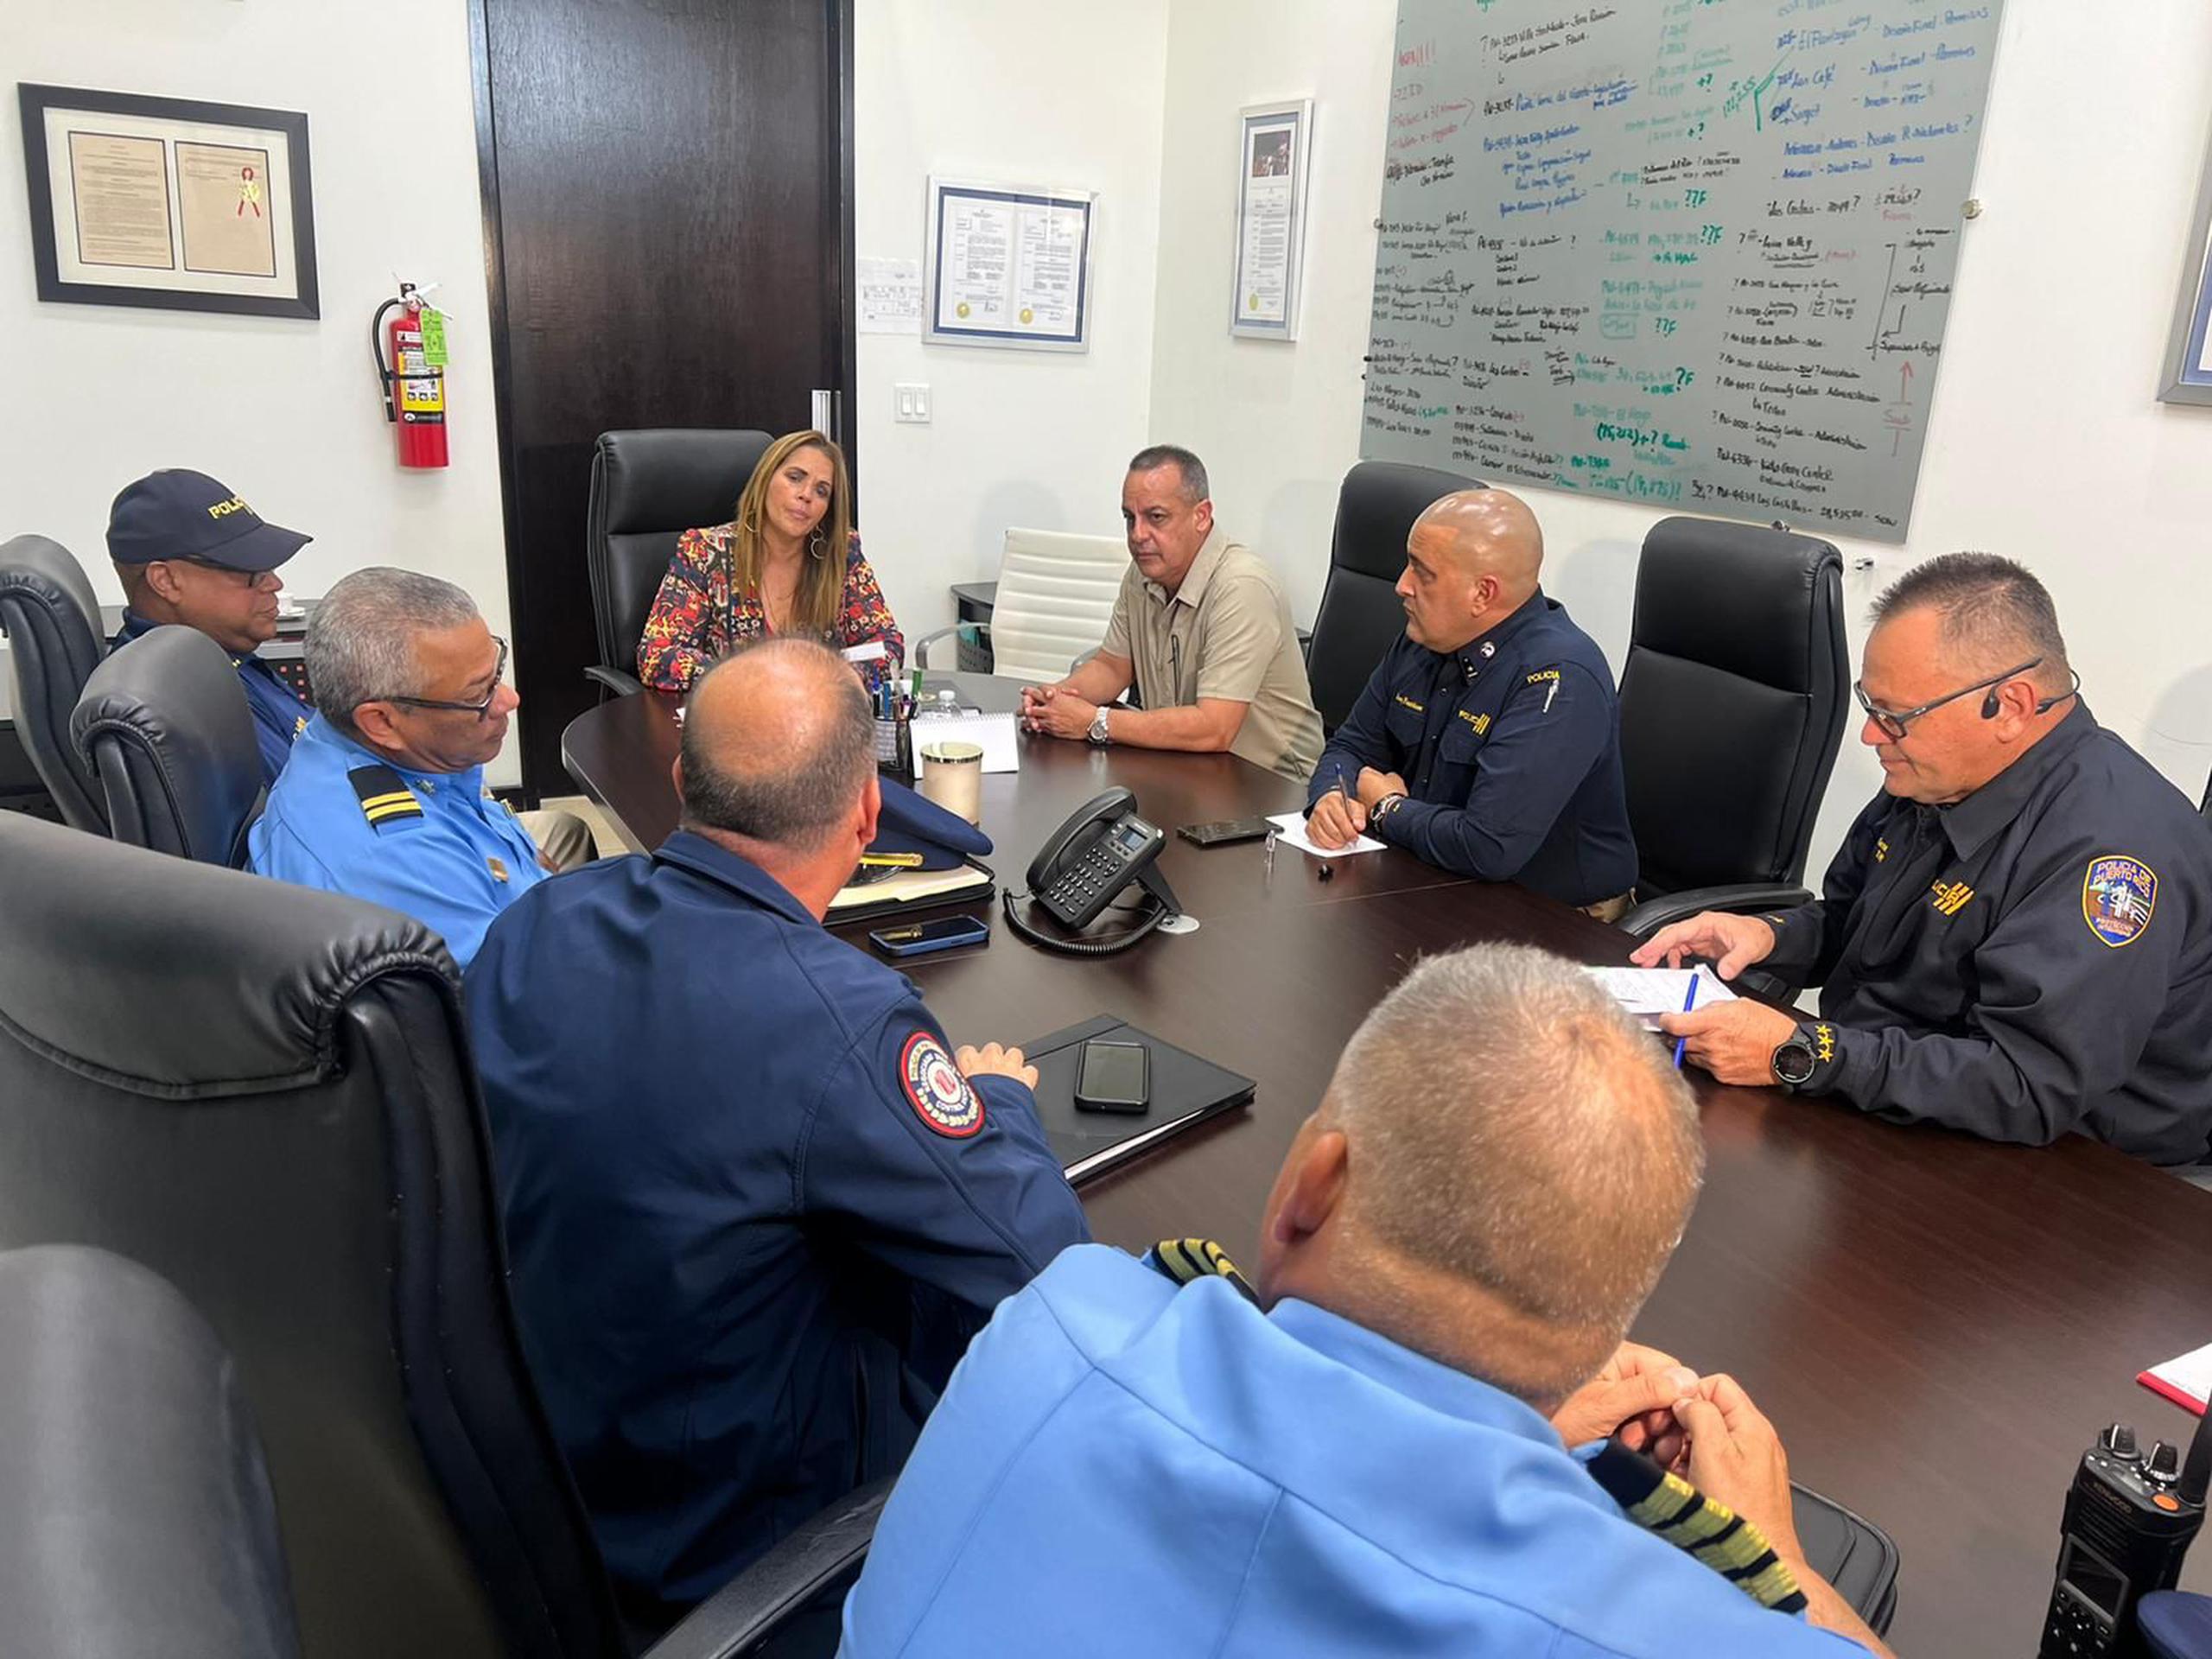 La alcaldesa de Canóvanas, Lornna Soto, se reunió con el comisionado de la Policía, Antonio López, y su grupo de trabajo en busca de soluciones a la ola criminal que los afecta.